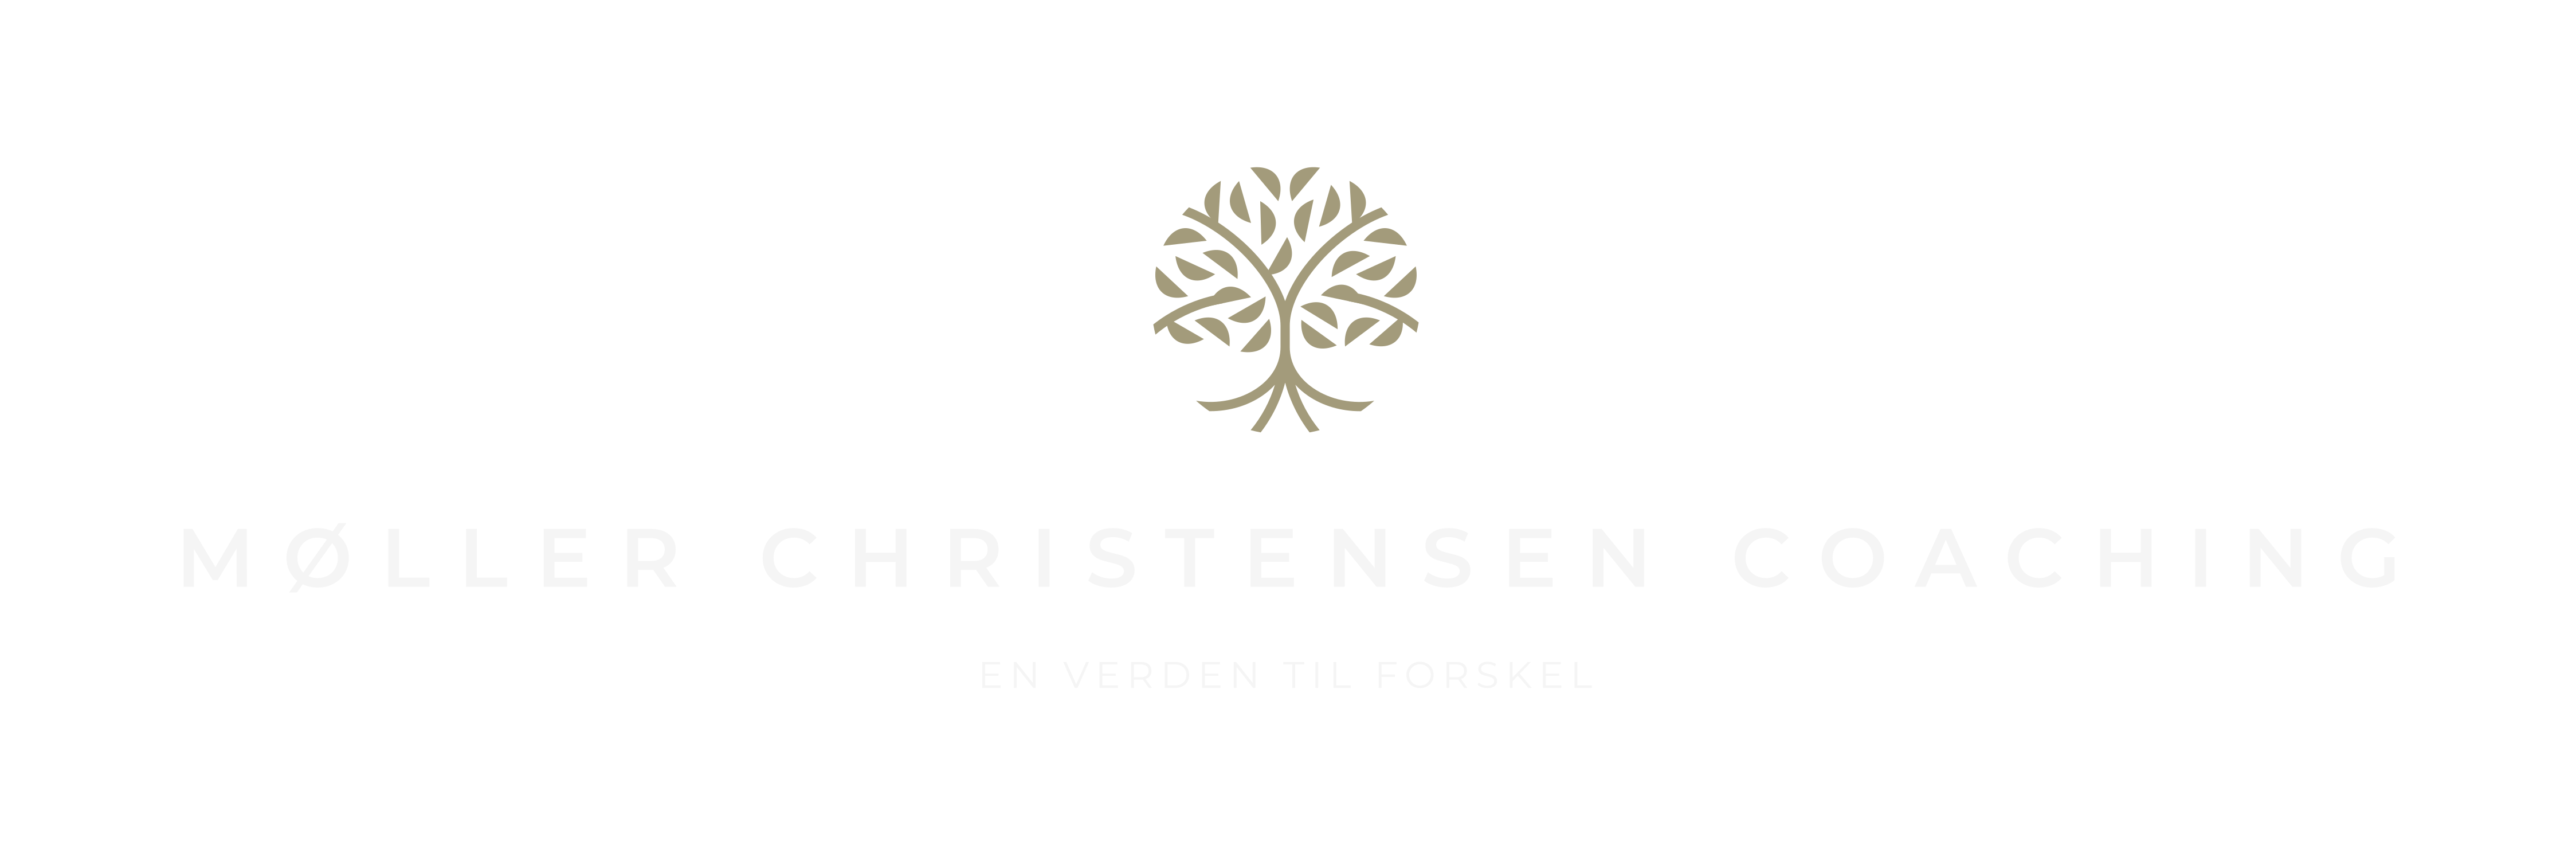 Møller Christensen Coaching